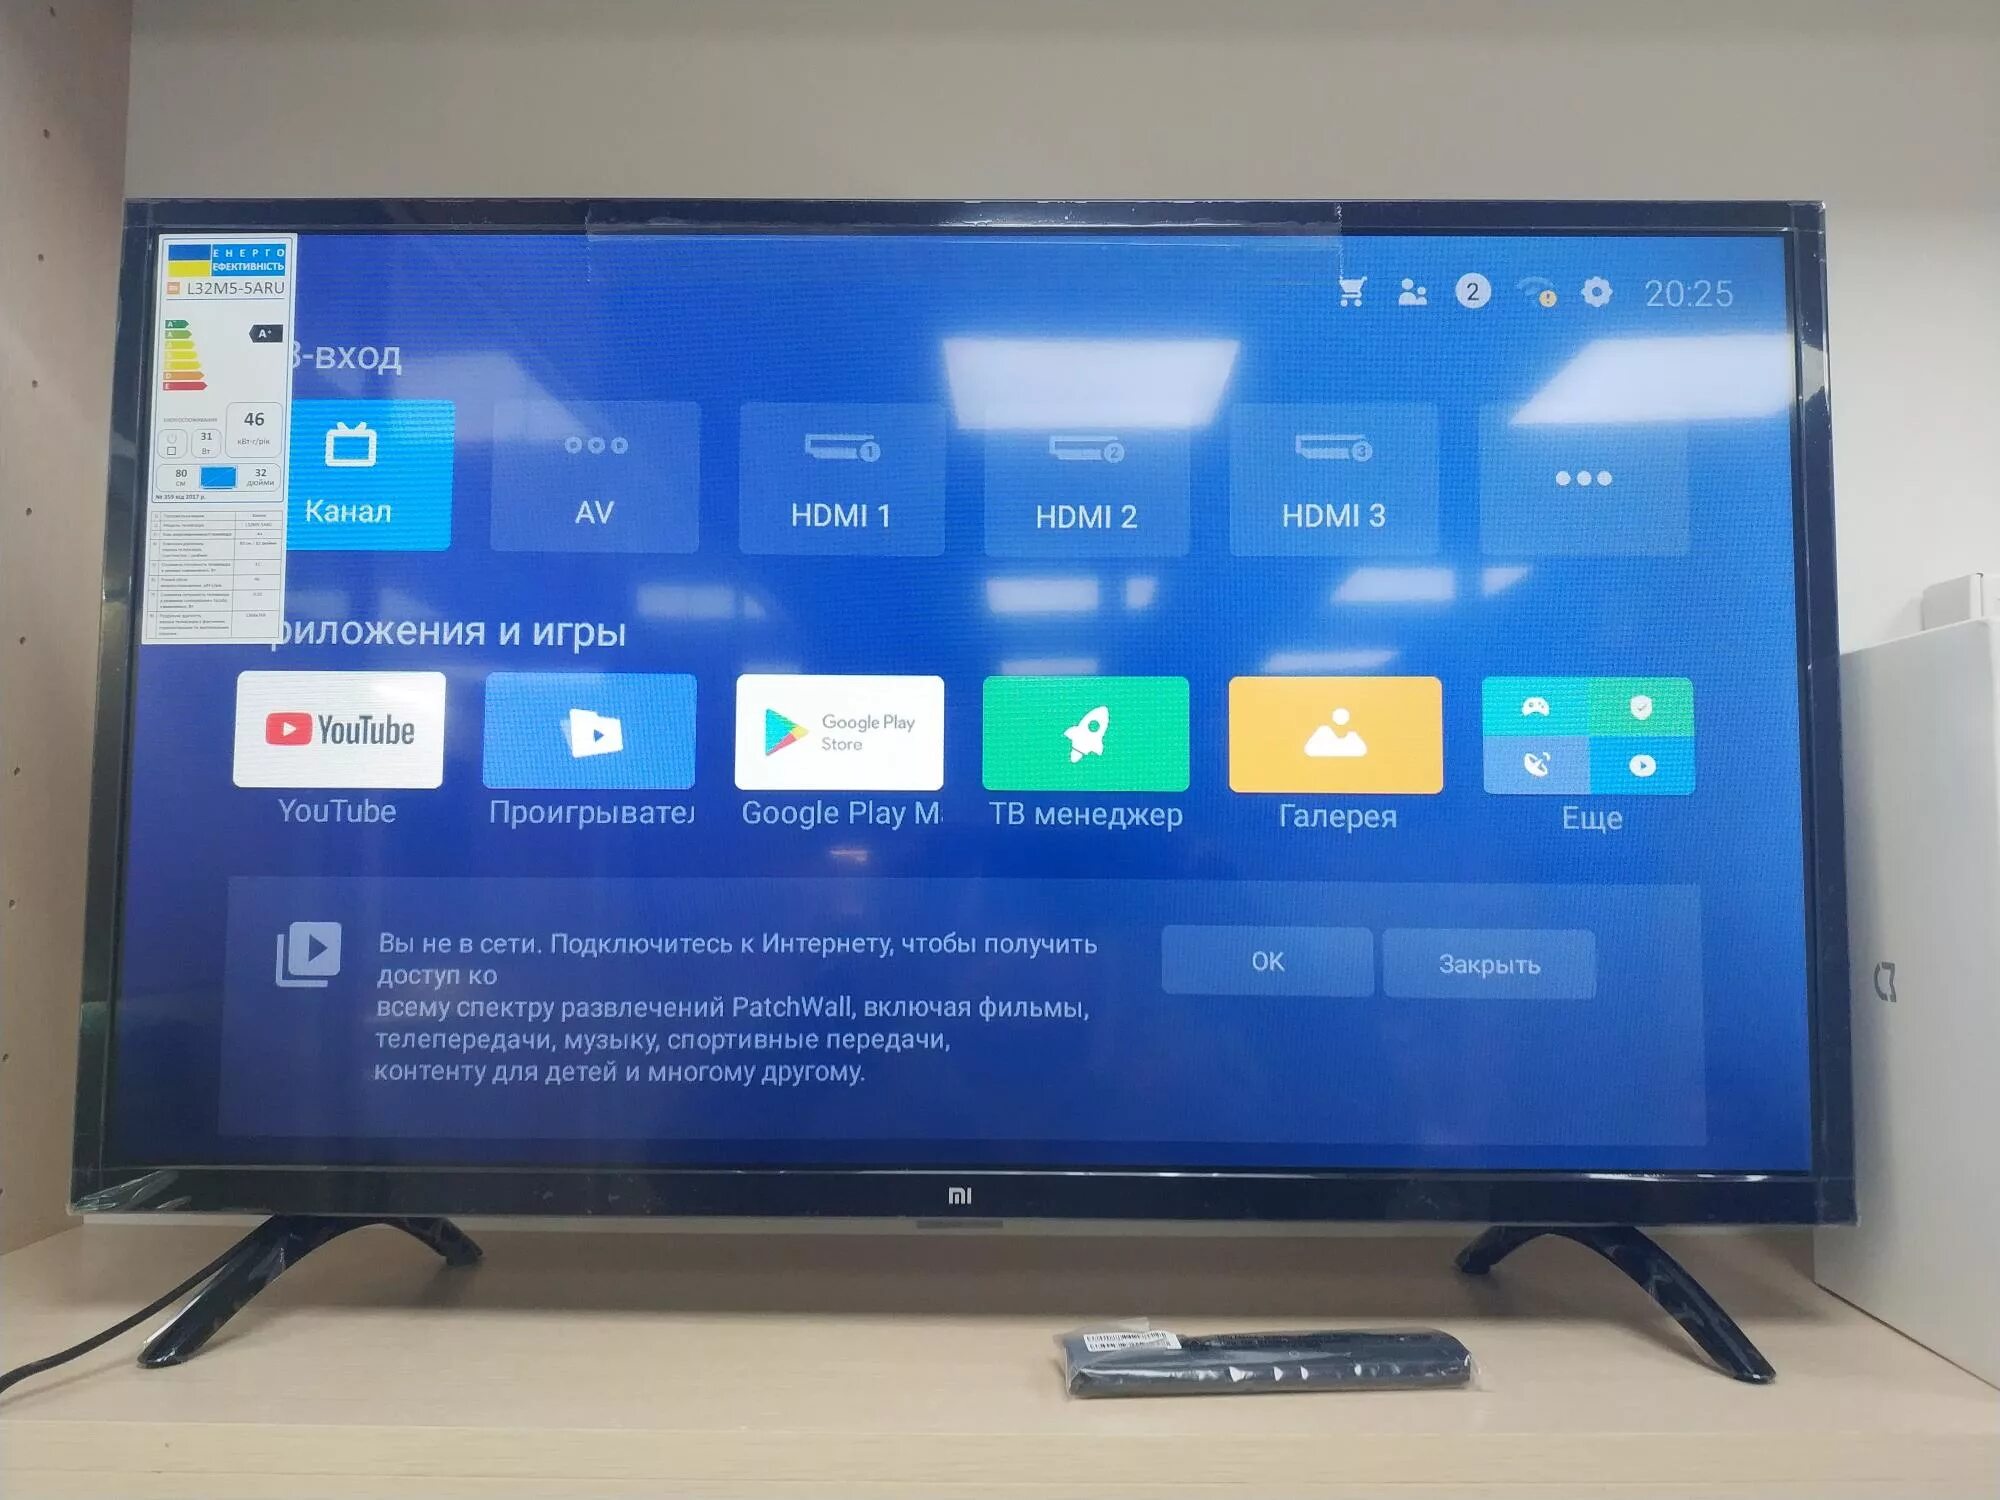 Телевизор Xiaomi l32m5-5aru. Xiaomi mi TV 4a 32 l32m5 5aru. Xiaomi mi TV 4a 32 пульт. Телевизор Xiaomi mi TV 4a 32 t2 31.5" (2019). Купить смарт тв авито